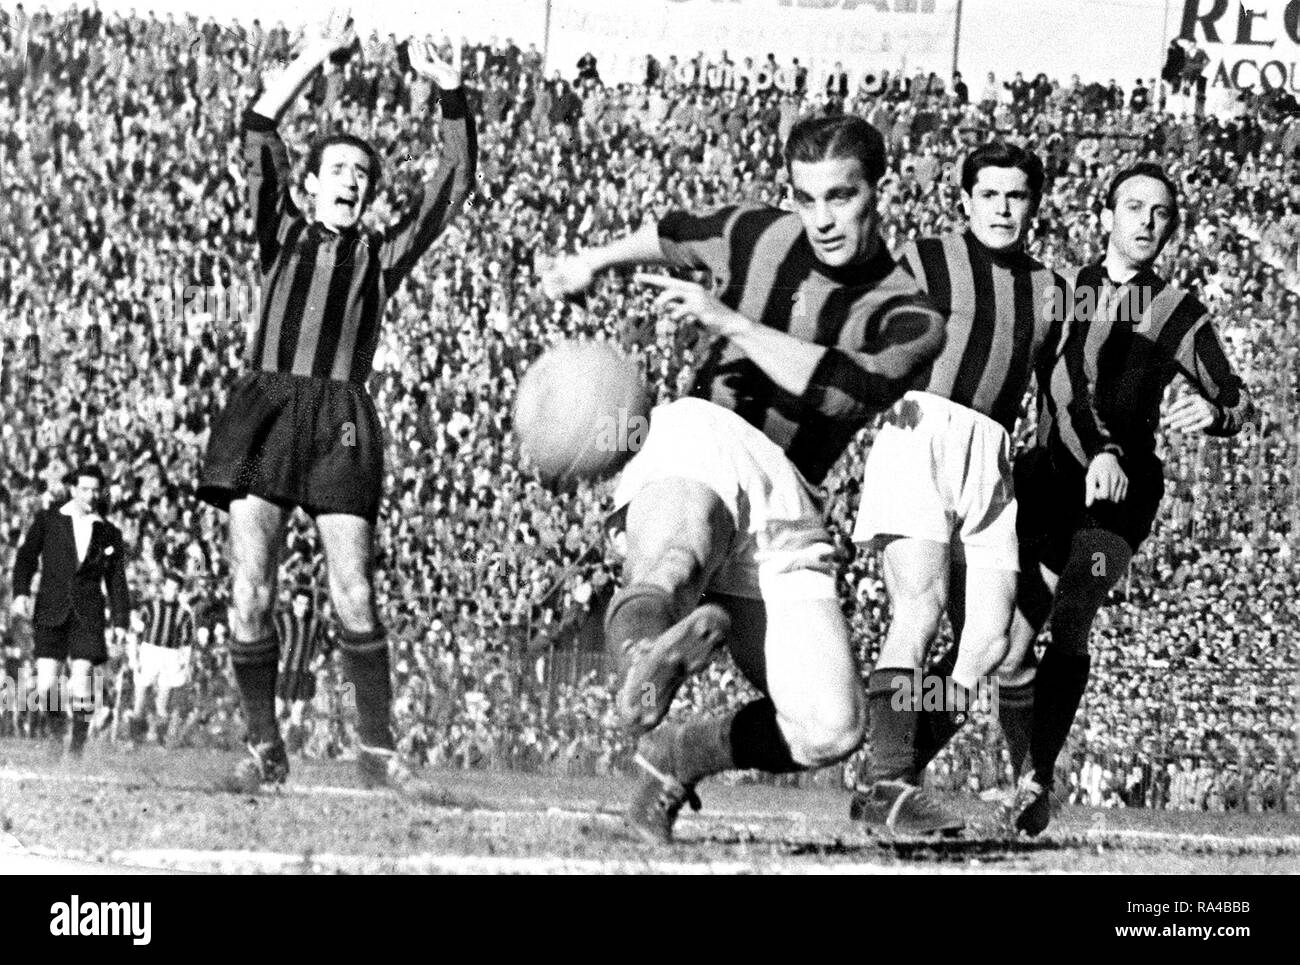 Mailand, San Siro Stadion, 25. März 1951. Rossonero Gunnar Nordahl (Mitte) das entscheidende Tor erzielte während der Mailänder Derby zwischen Inter und Milan (0-1) gilt für den 29. Spieltag der italienischen Serie A 1950 - 51. Stockfoto